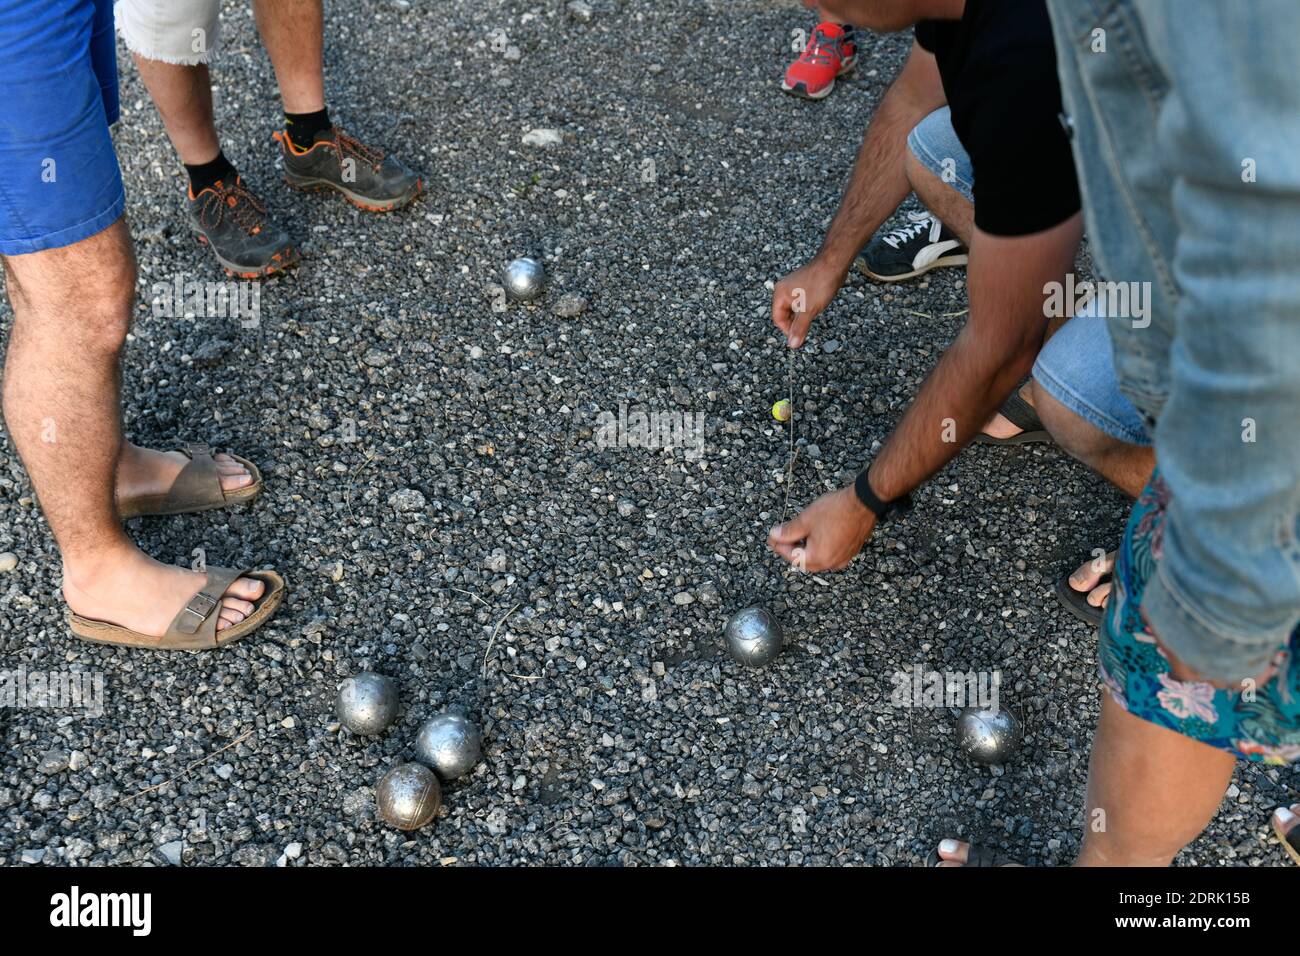 Abbildung, Spiel mit Bällen aus Südfrankreich: Spieler, die den Abstand zwischen dem Buben und einer Boule messen Stockfoto